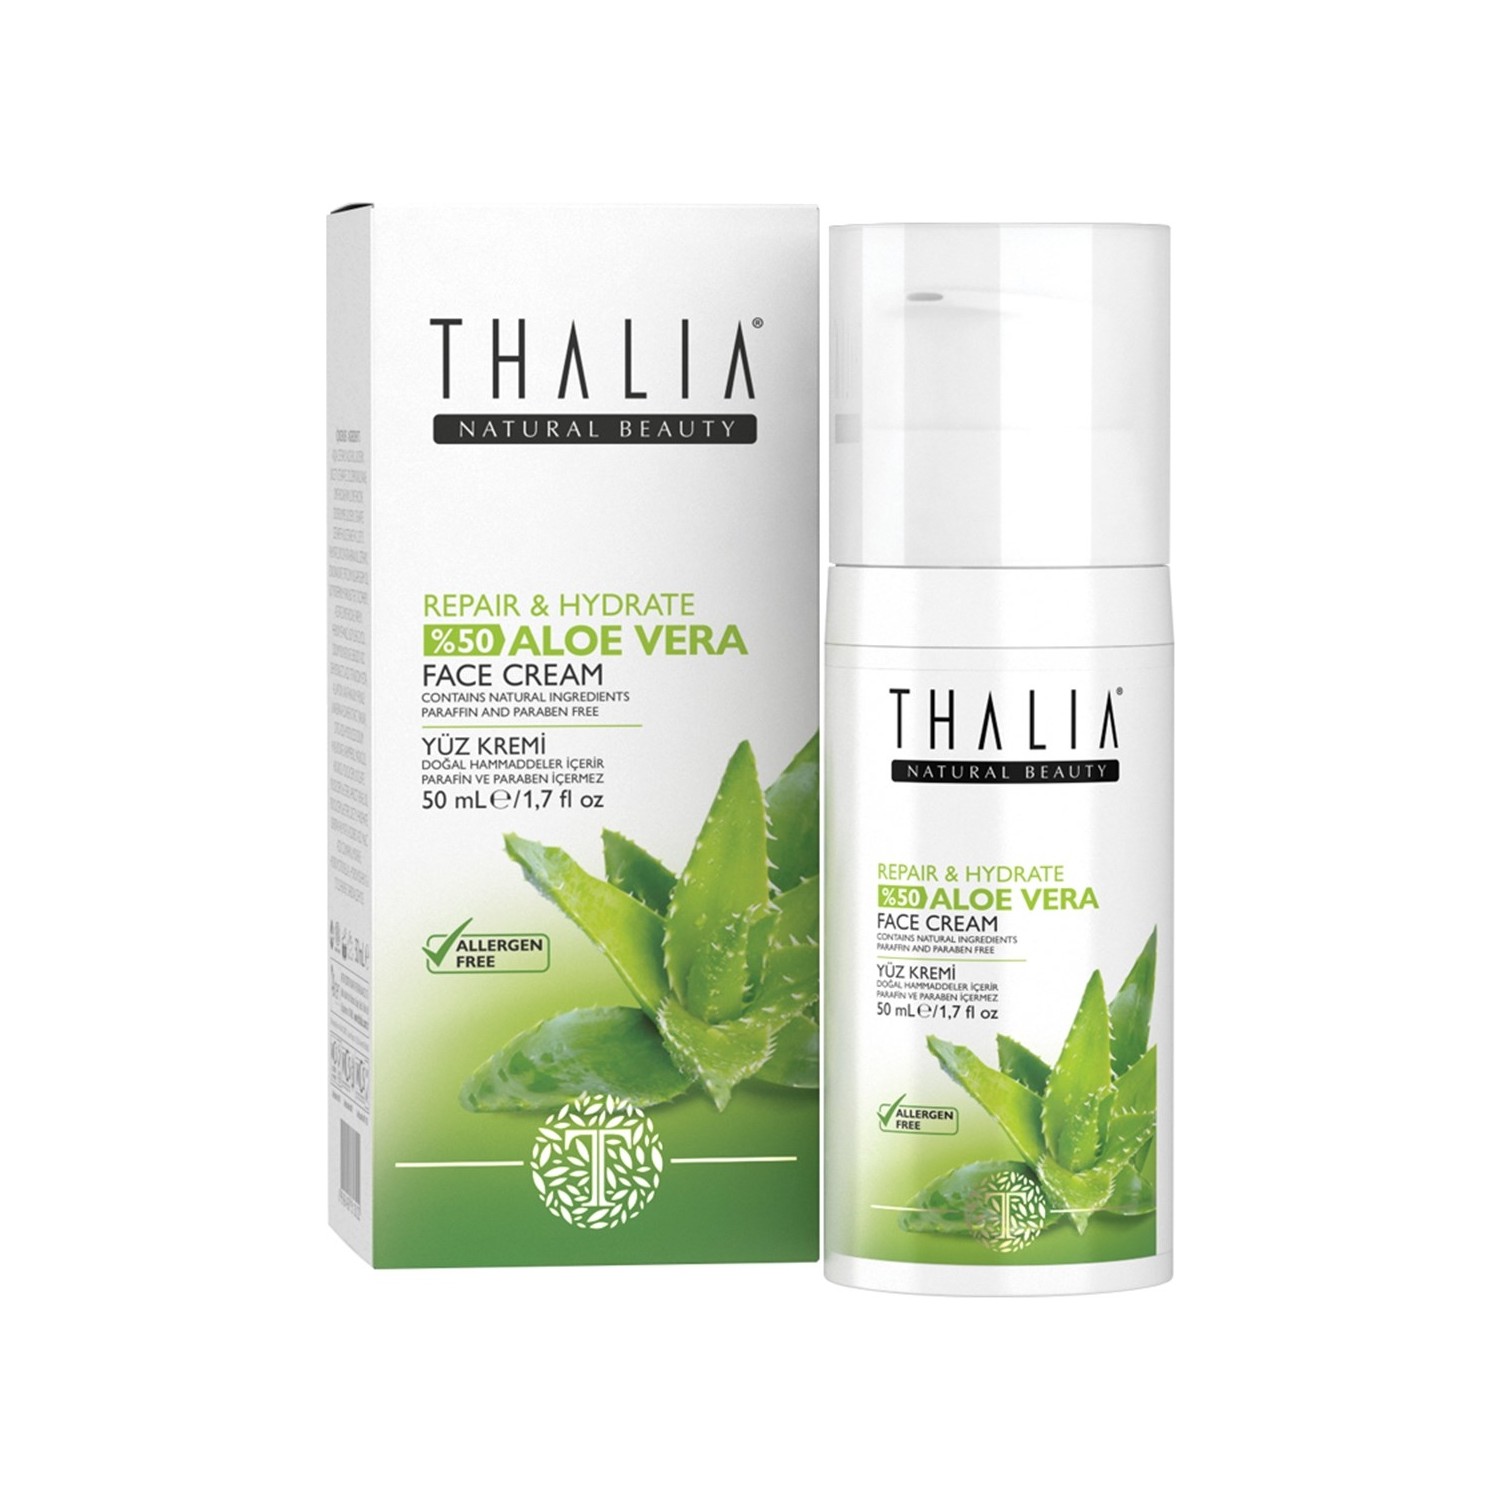 цена Восстанавливающий и увлажняющий крем Thalia Aloe Vera Series для лица, 50 мл